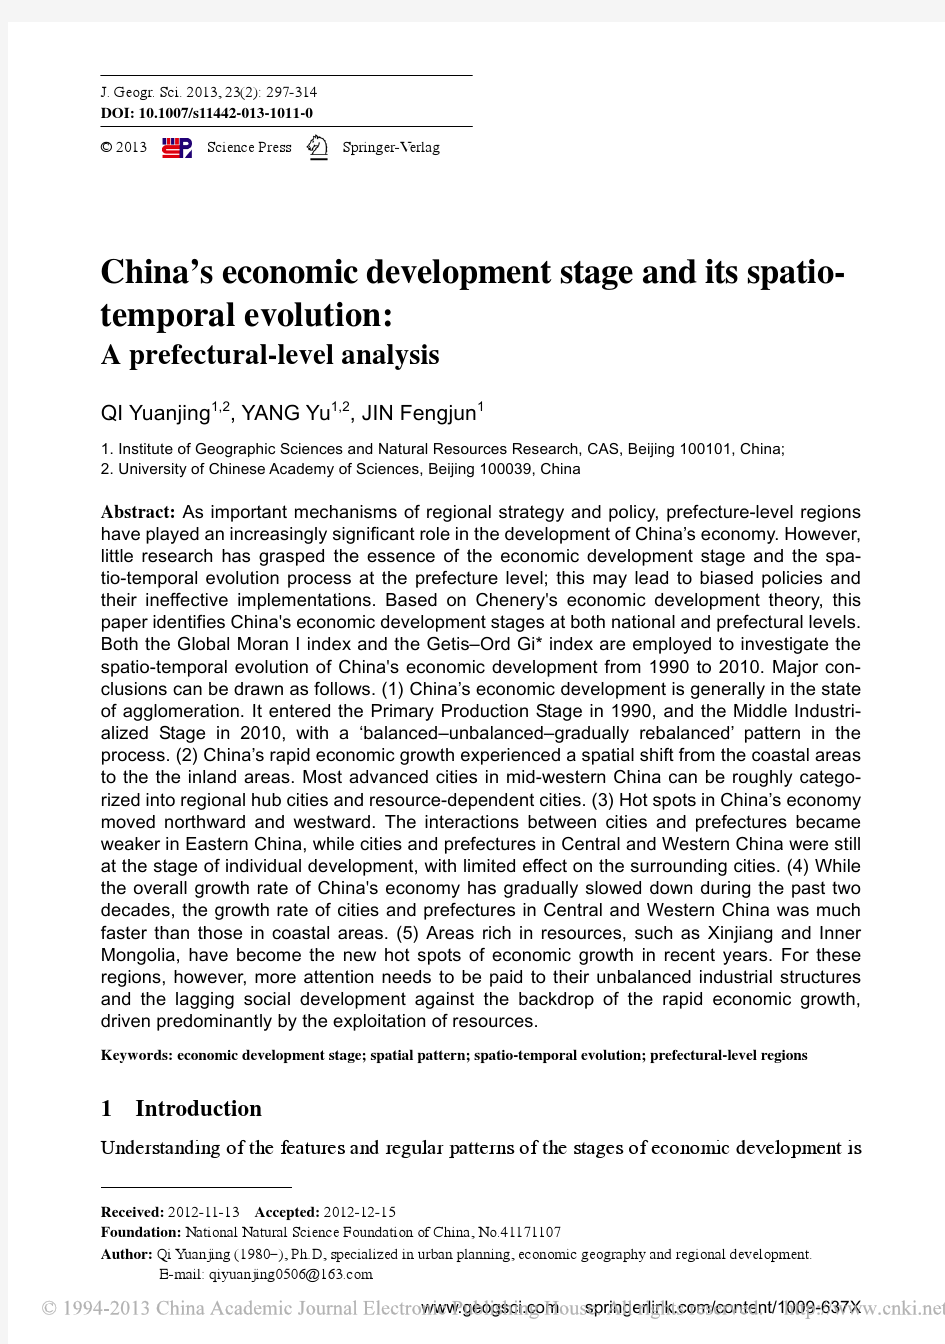 基于地级行政单元的中国经济发展阶段及其时空格局演变_英文_齐元静